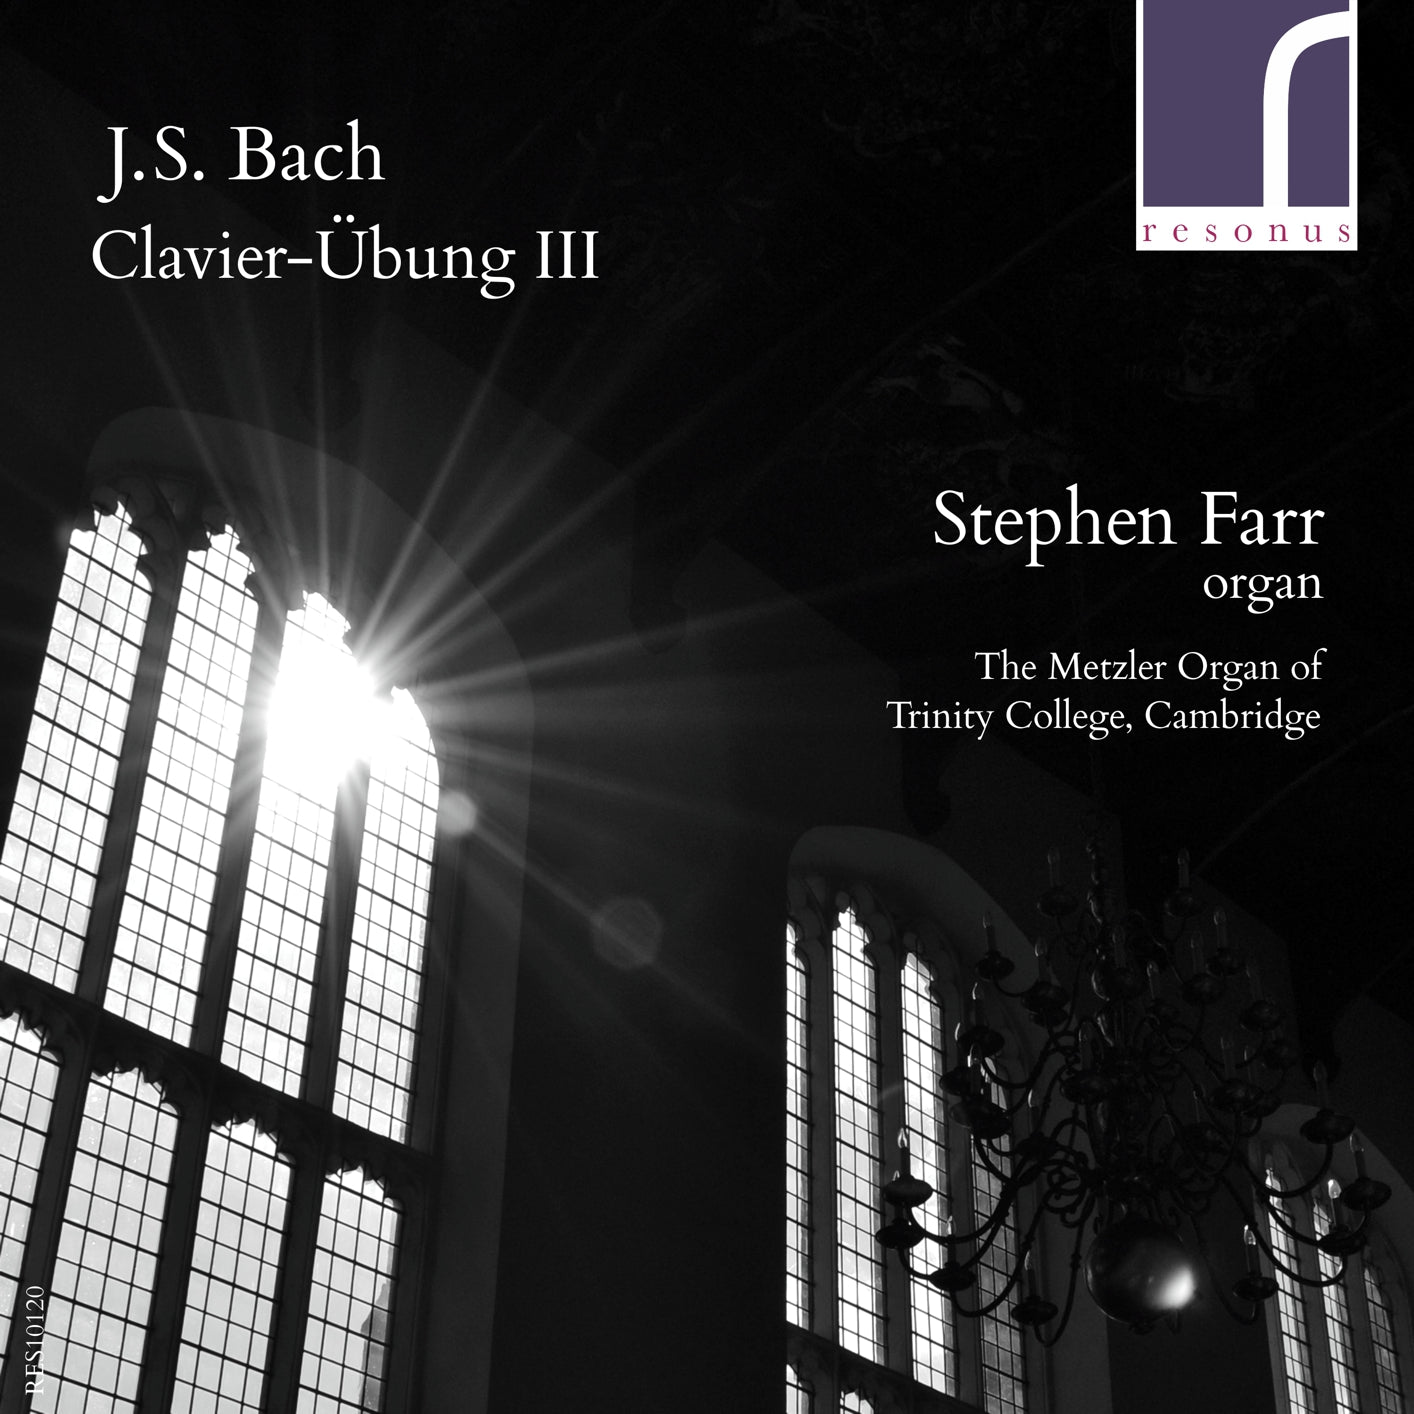 J.S. Bach: Clavier-Übung III